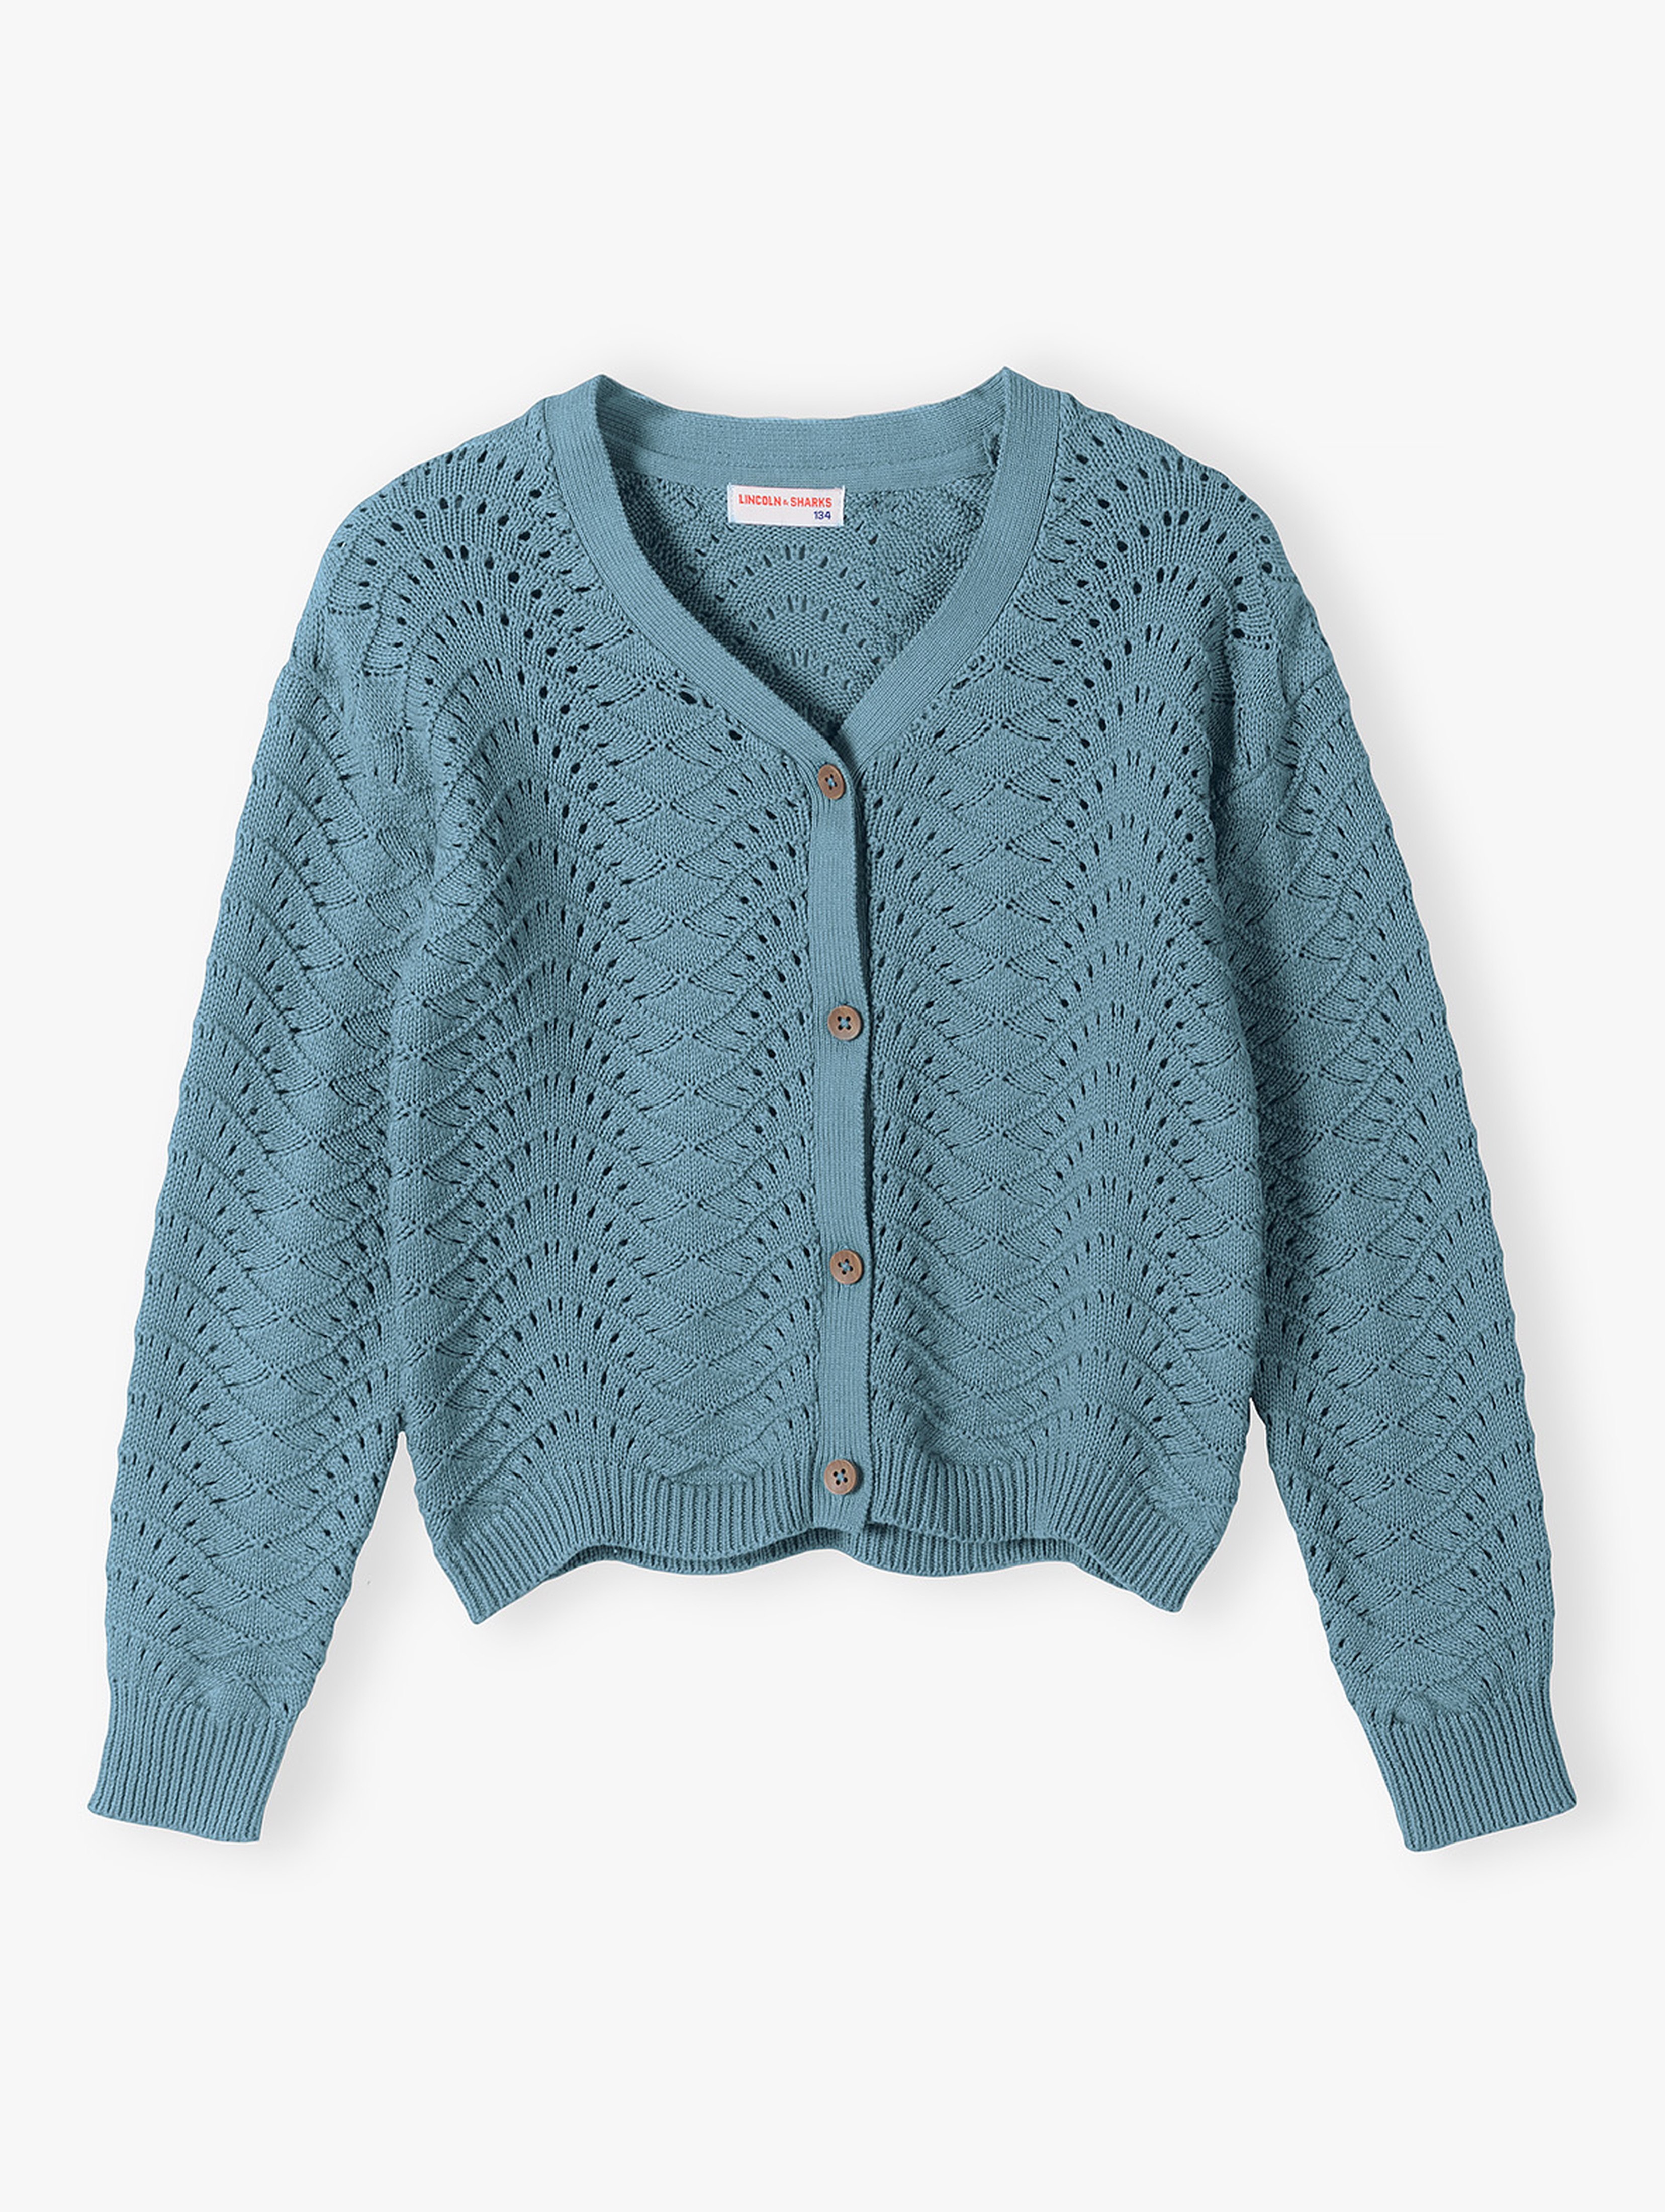 Sweter dziewczęcy z ażurowym wzorem - niebieski